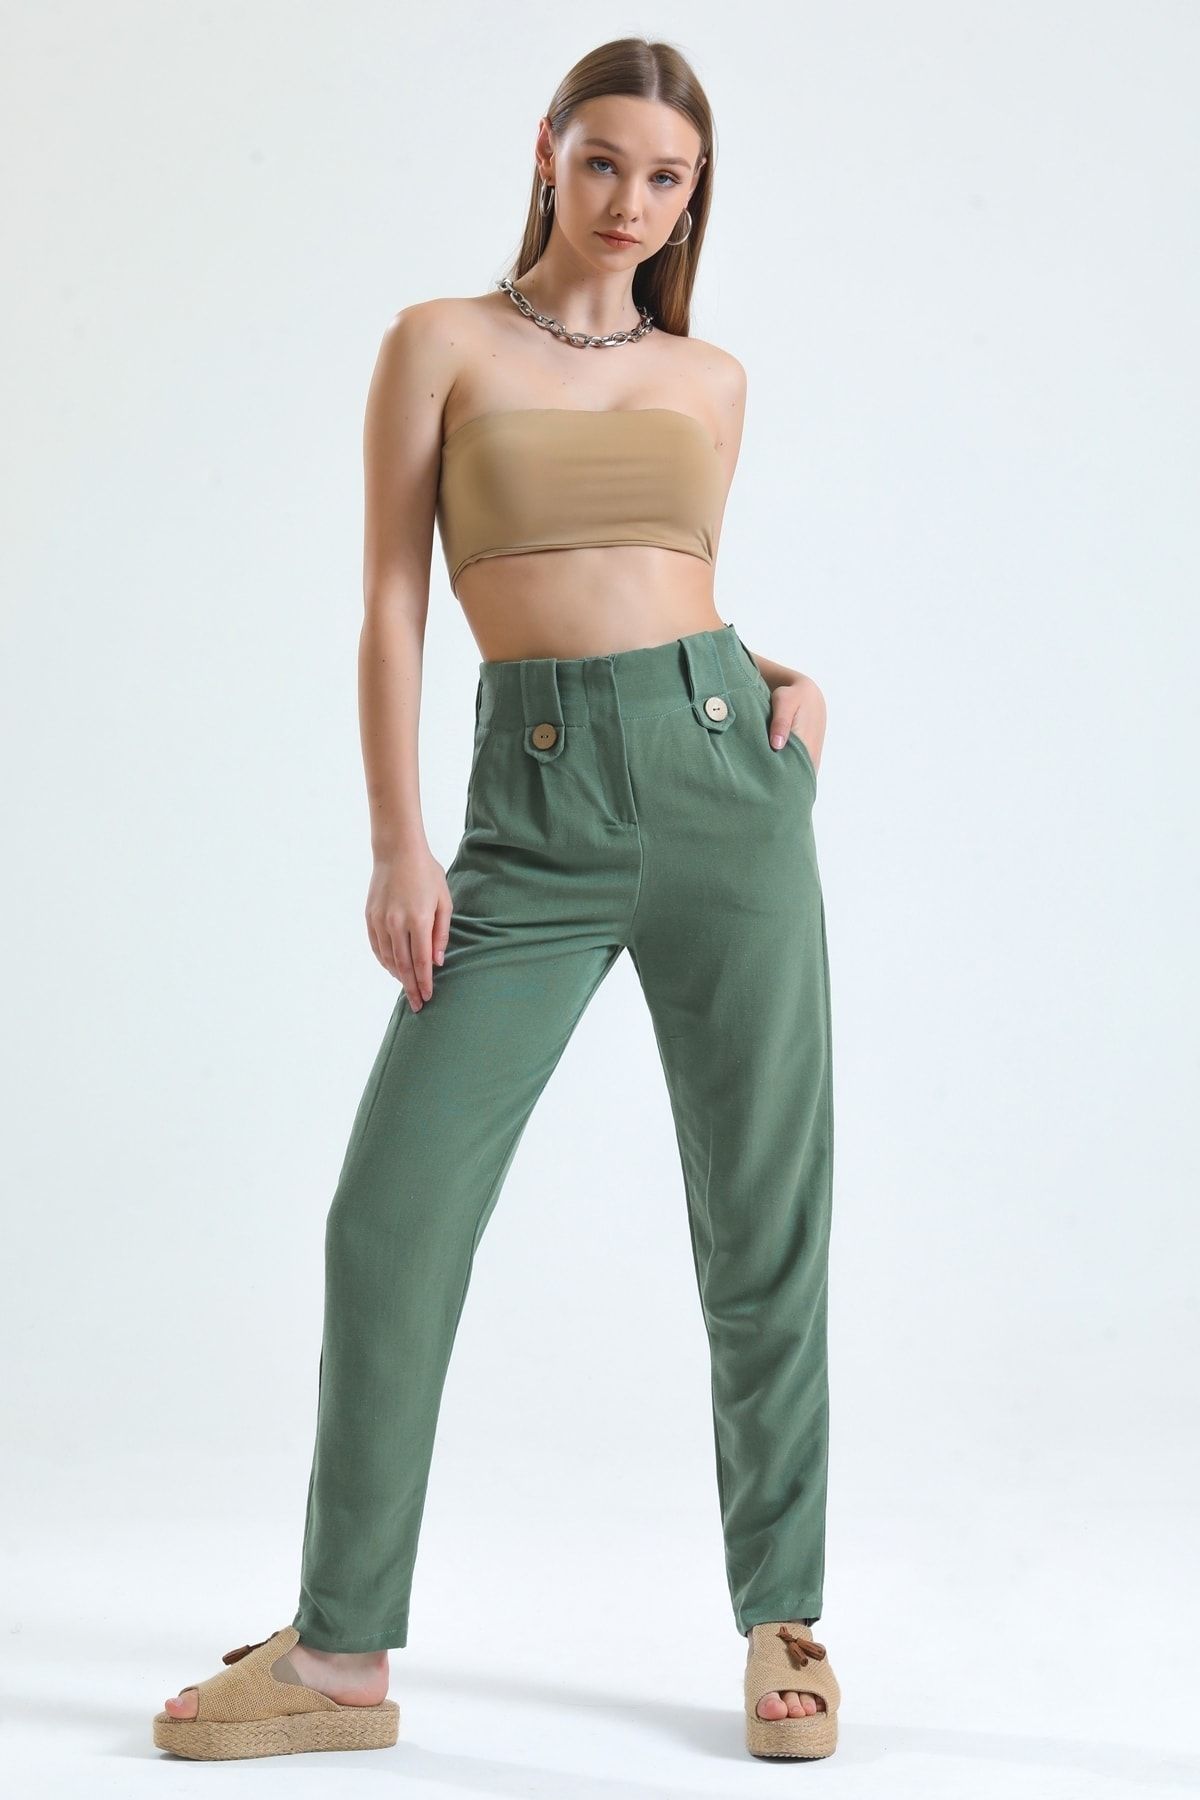 MD trend Kadın Mint Yeşil Yüksek Bel Önü Fermuar Kapamalı Bel Lastikli Keten Pantolon